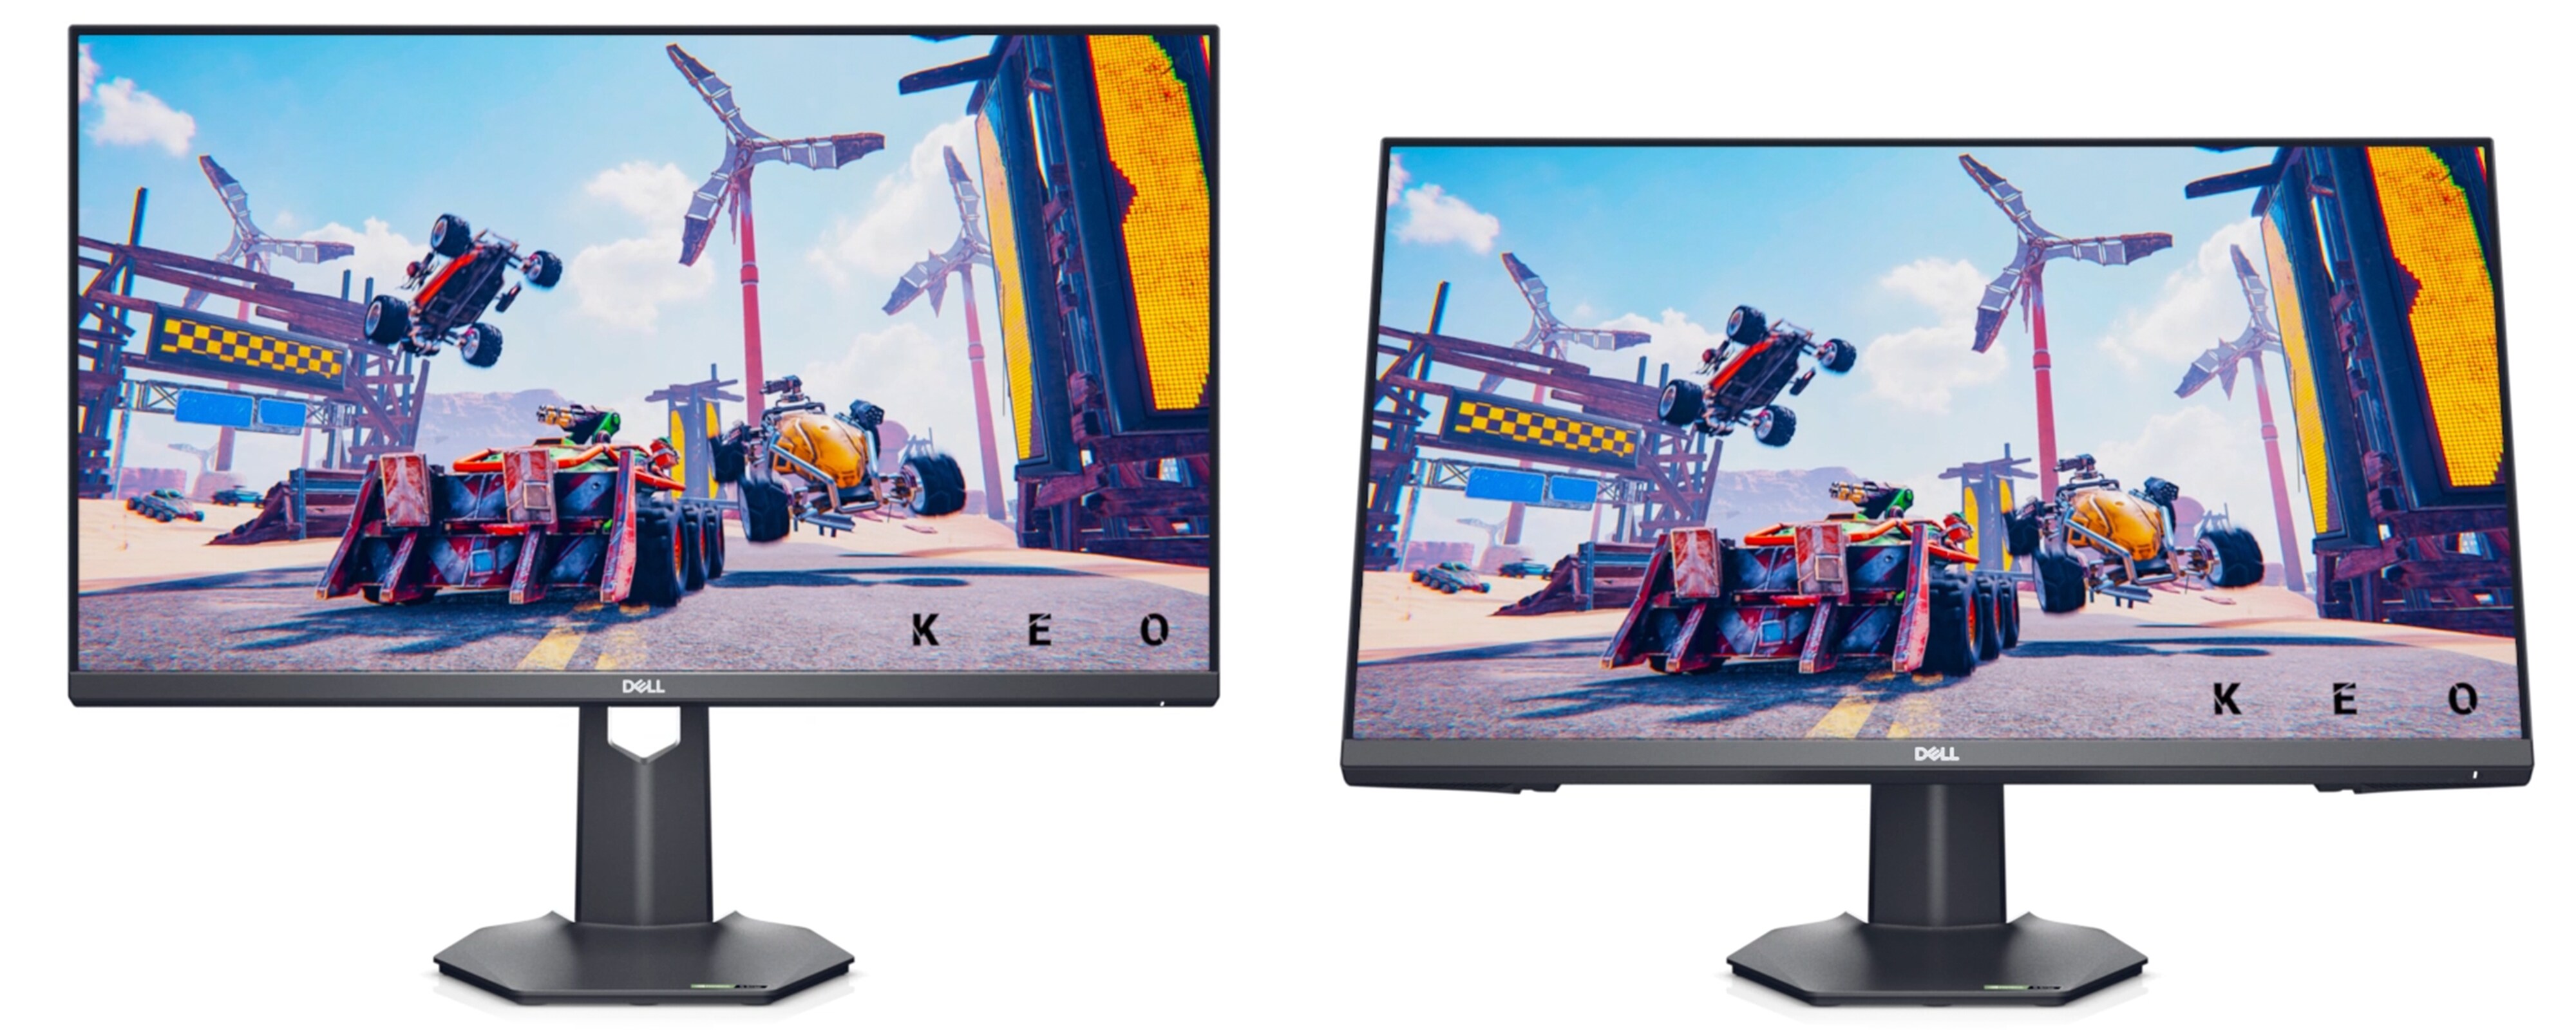 Bild von zwei Dell G2722HS Gaming-Monitoren vor einem weißen Hintergrund mit einer KEO-Spielanzeige auf beiden Bildschirmen.